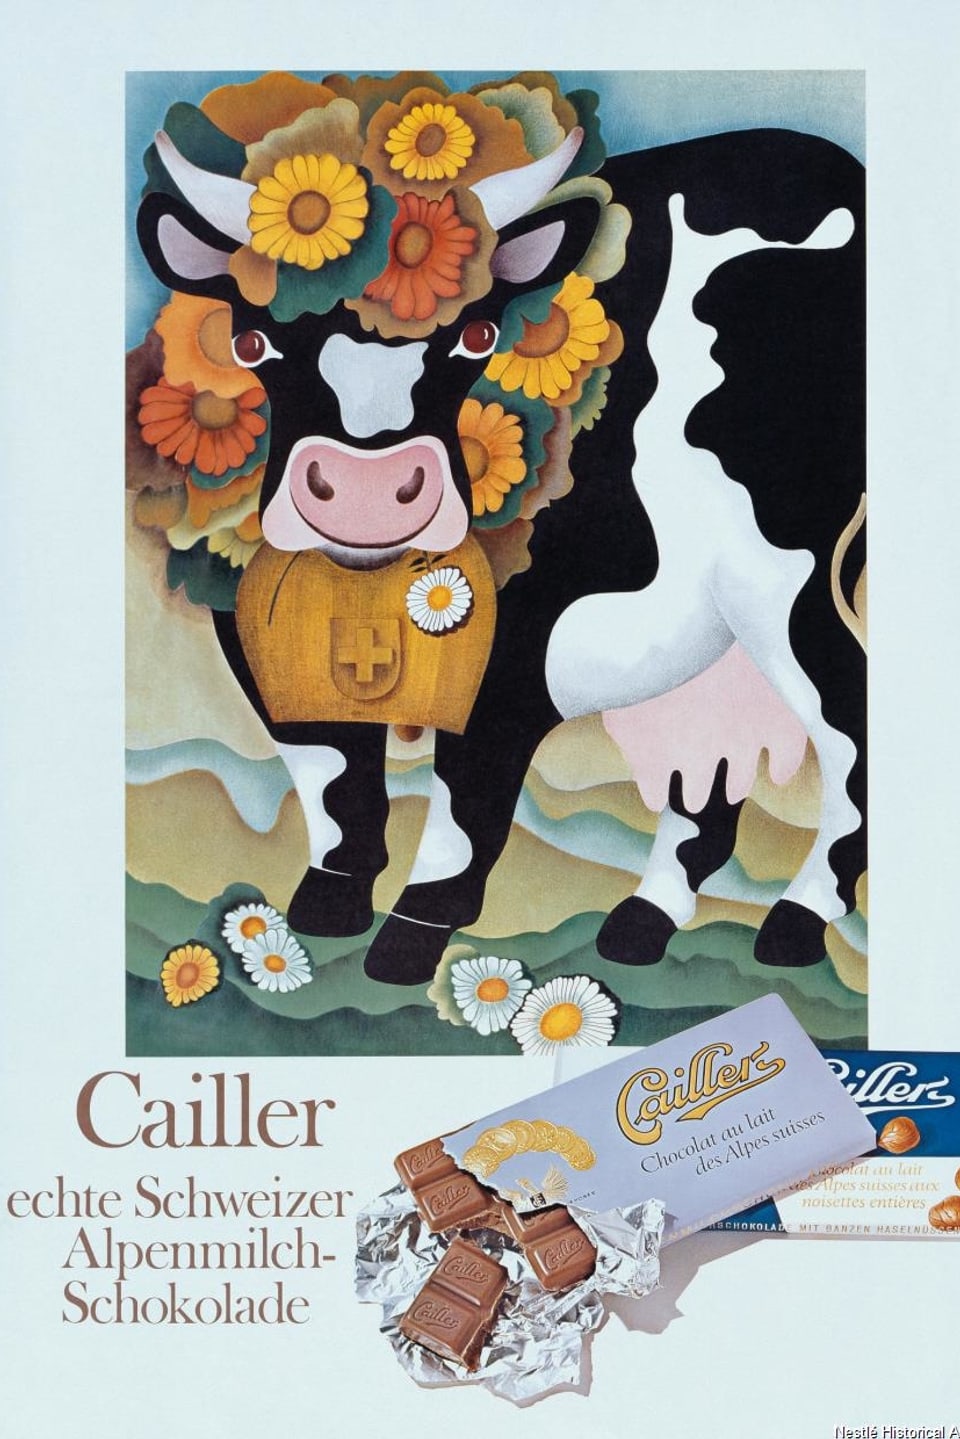 Eine geschmückte Kuh und Schokoladentafeln.